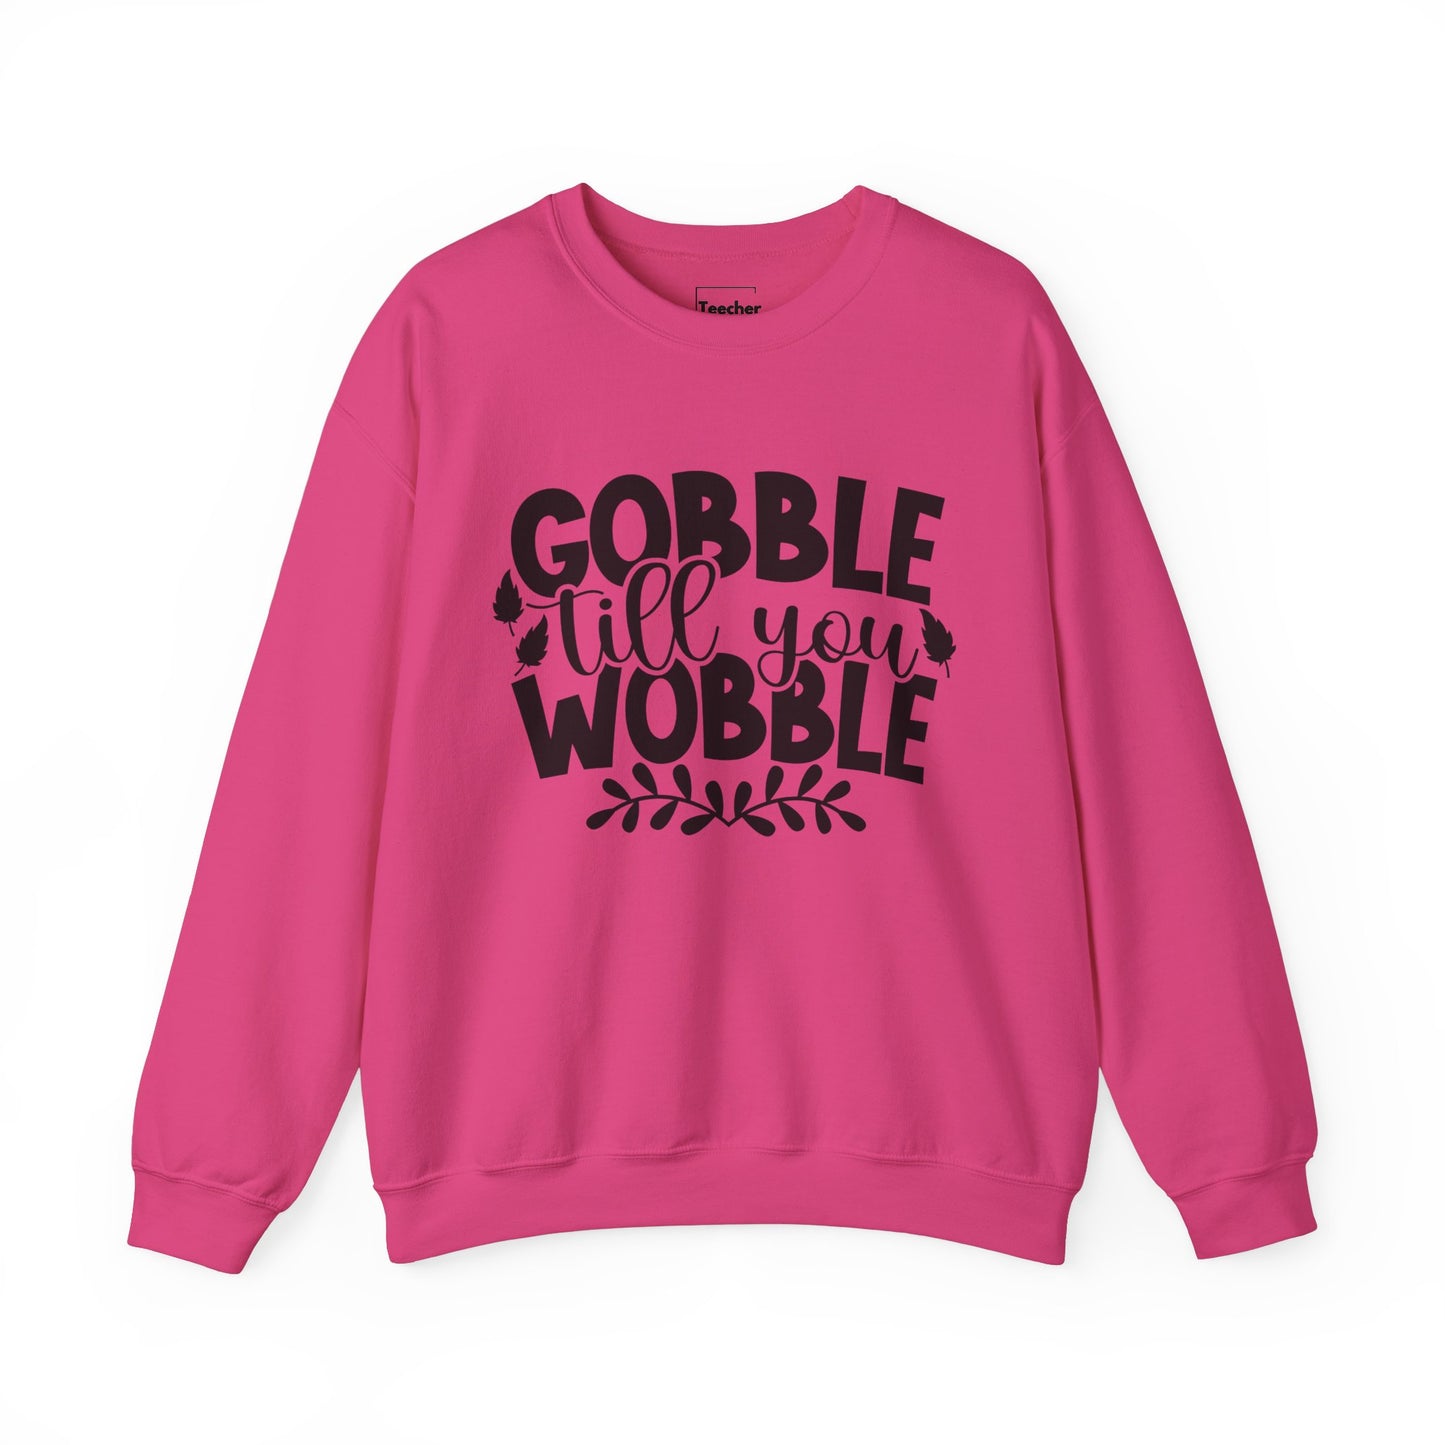 Gobble Sweatshirt